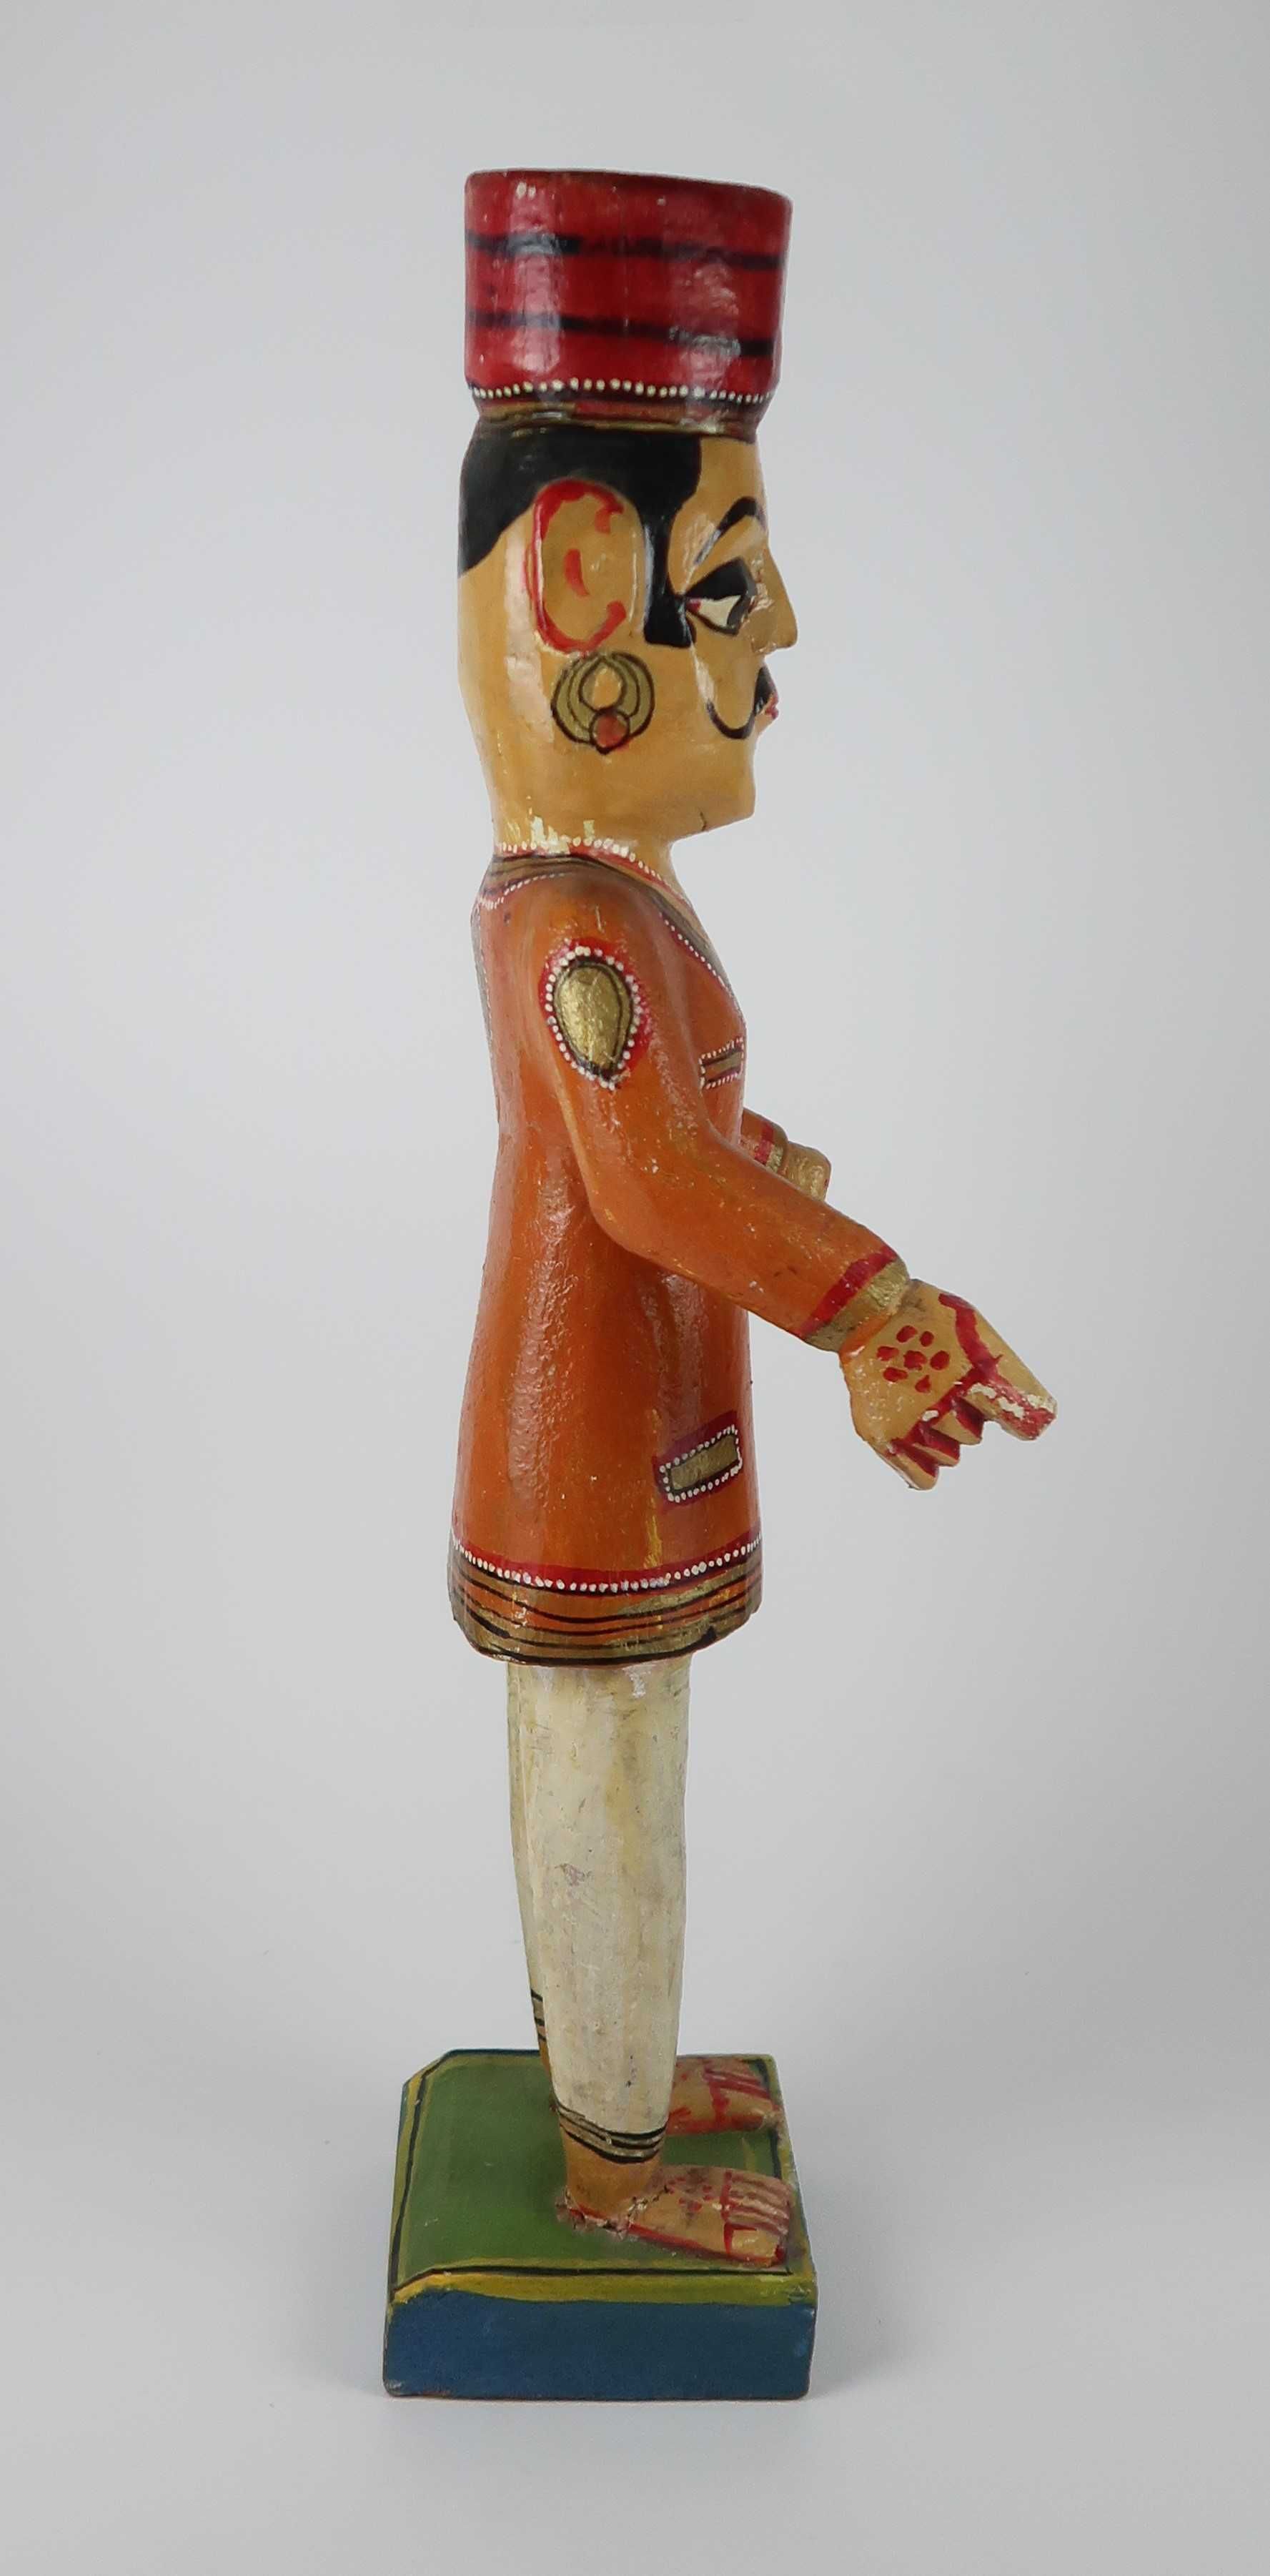 Boneco antigo em madeira - 47 cm